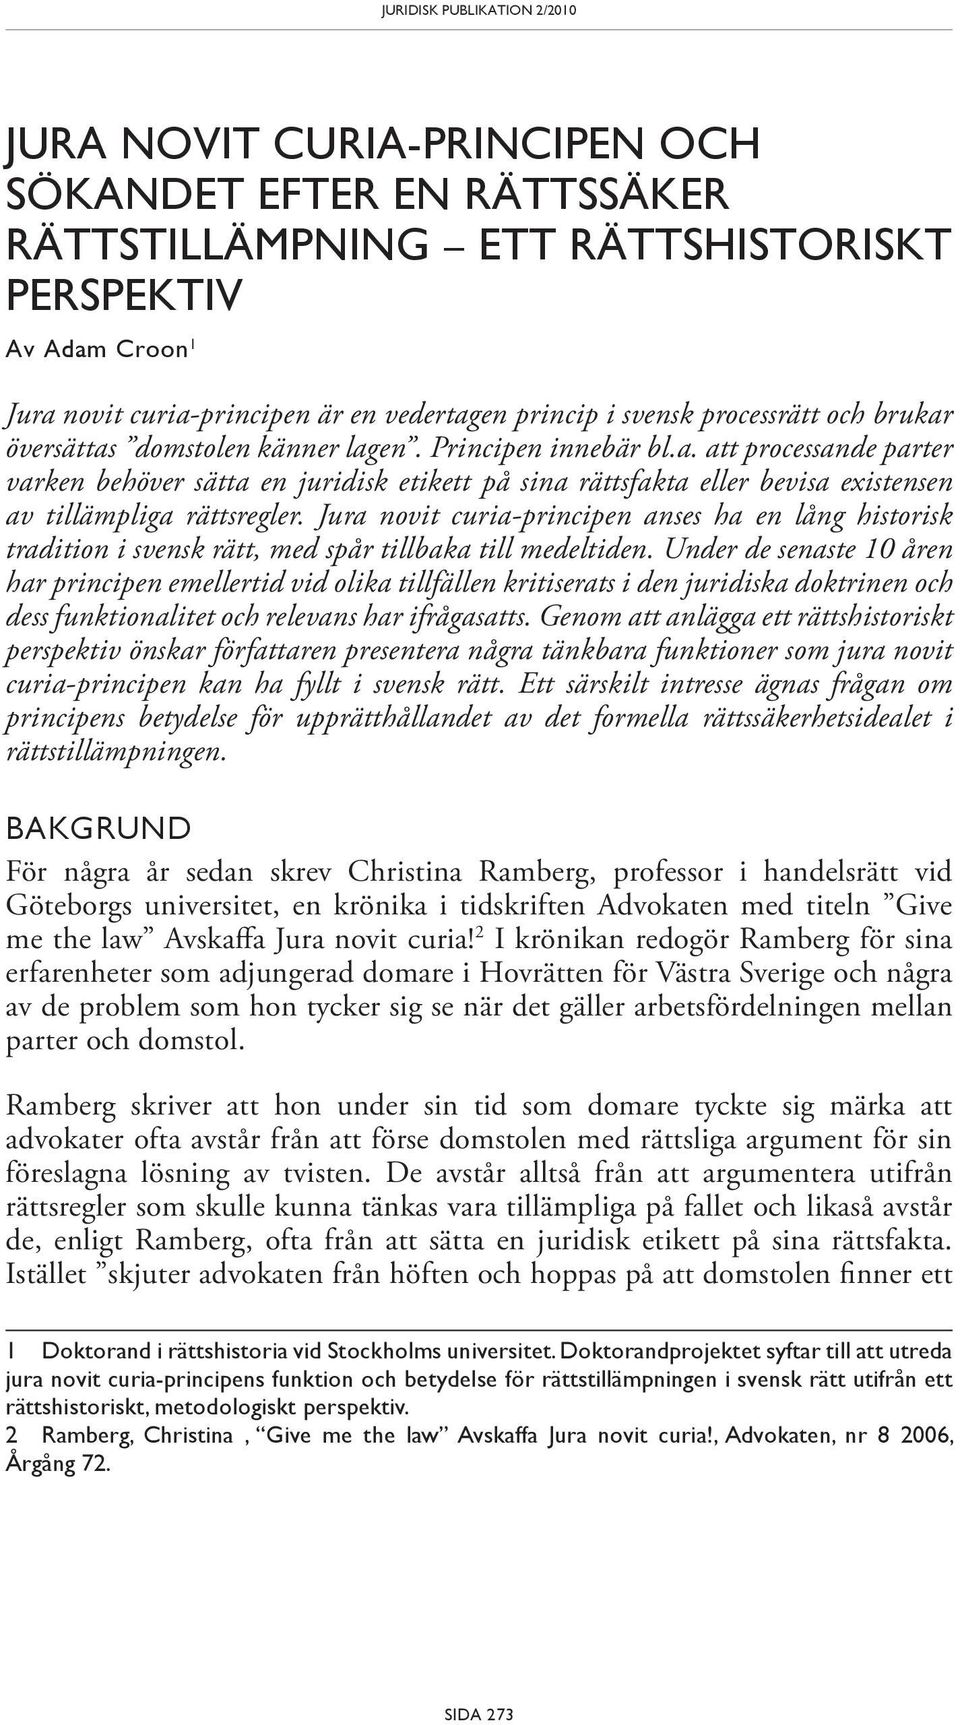 Jura novit curia-principen anses ha en lång historisk tradition i svensk rätt, med spår tillbaka till medeltiden.